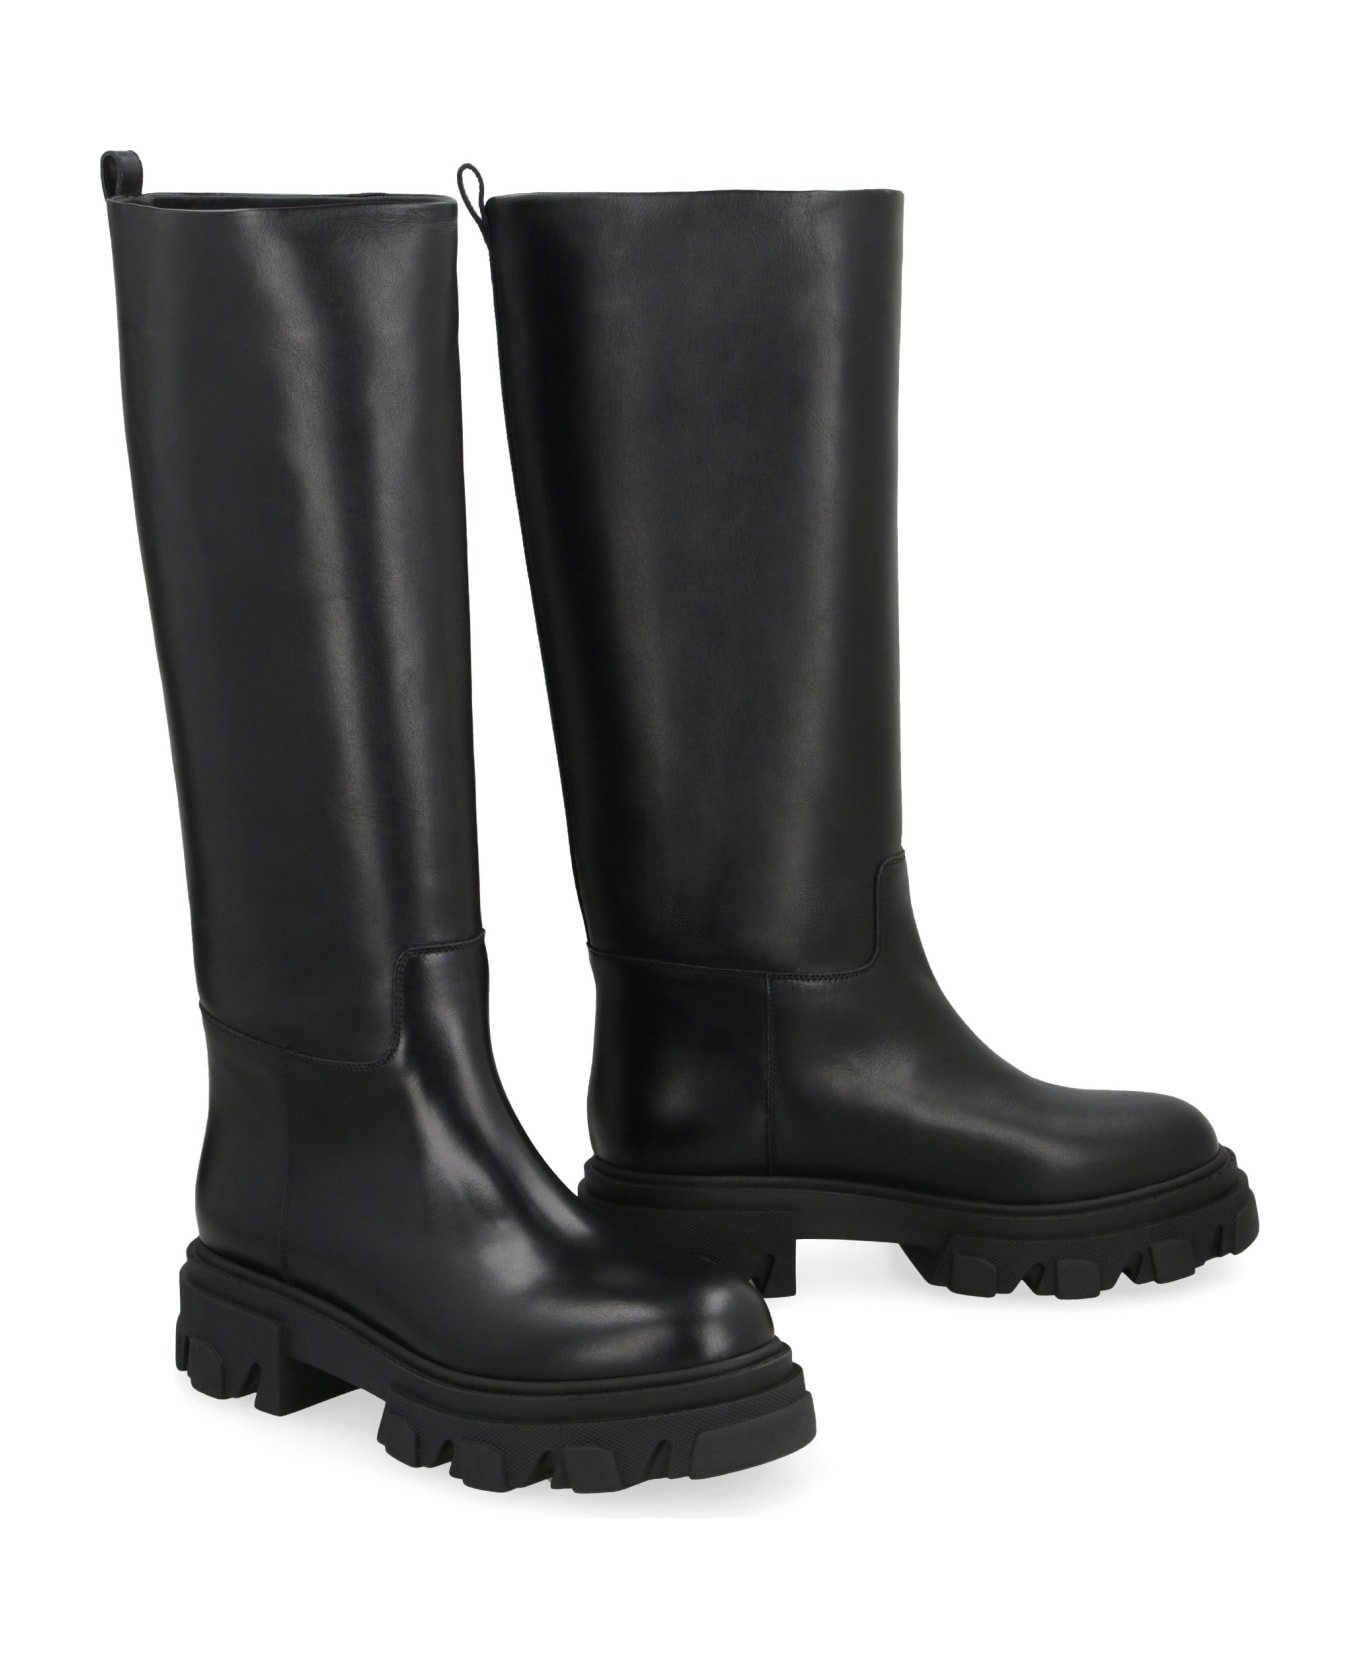 GIA BORGHINI Perni 07 Leather Boots - black ブーツ